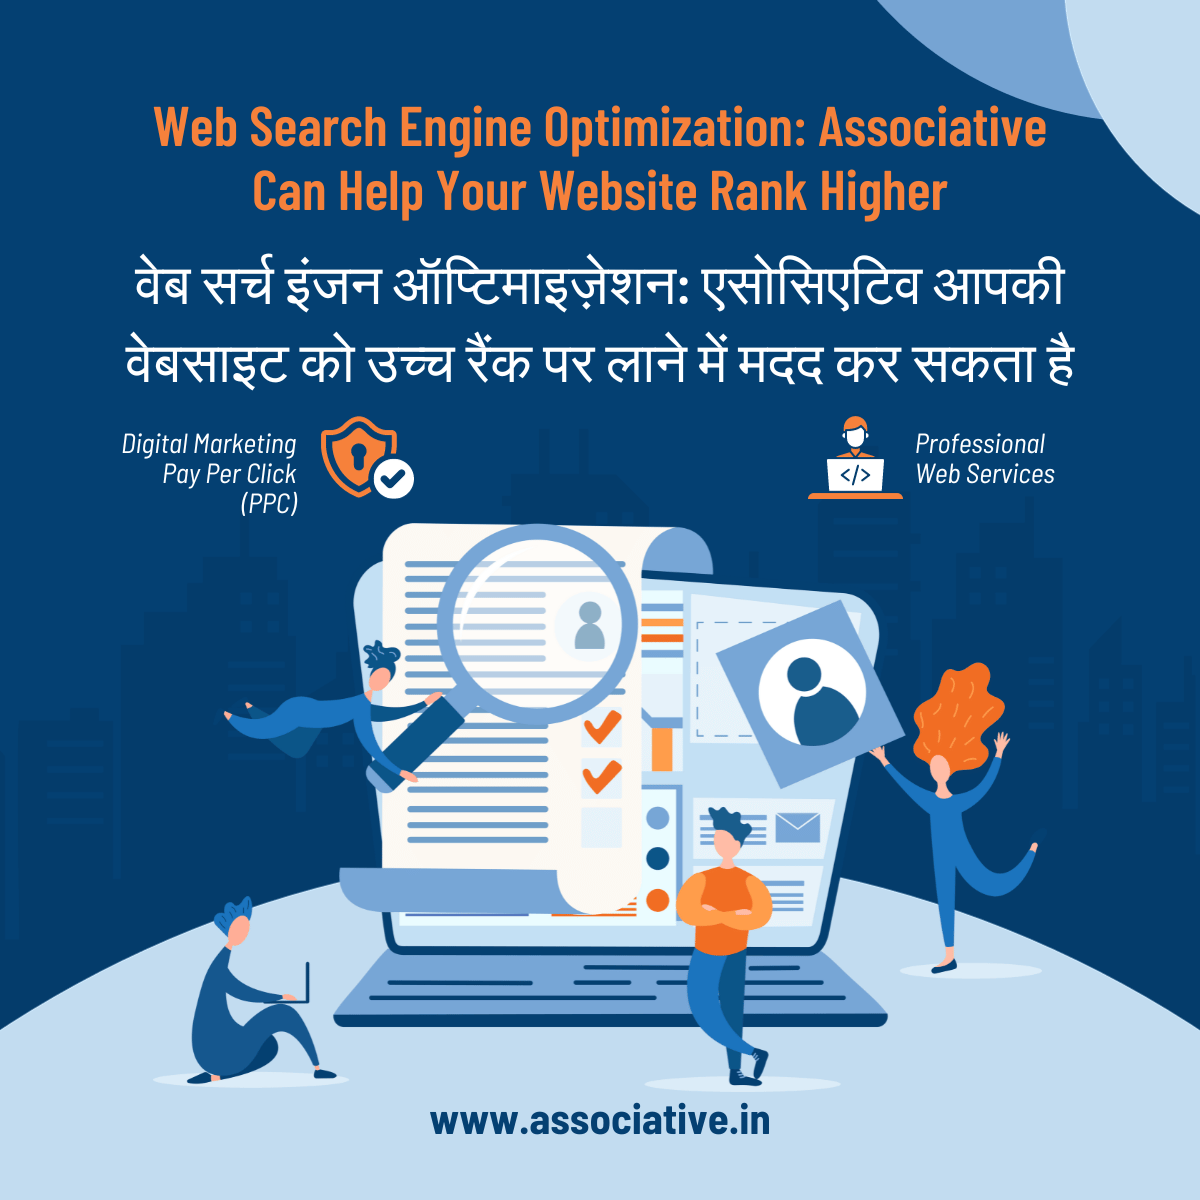 Web Search Engine Optimization: Associative Can Help Your Website Rank Higher वेब सर्च इंजन ऑप्टिमाइज़ेशन: एसोसिएटिव आपकी वेबसाइट को उच्च रैंक पर लाने में मदद कर सकता है